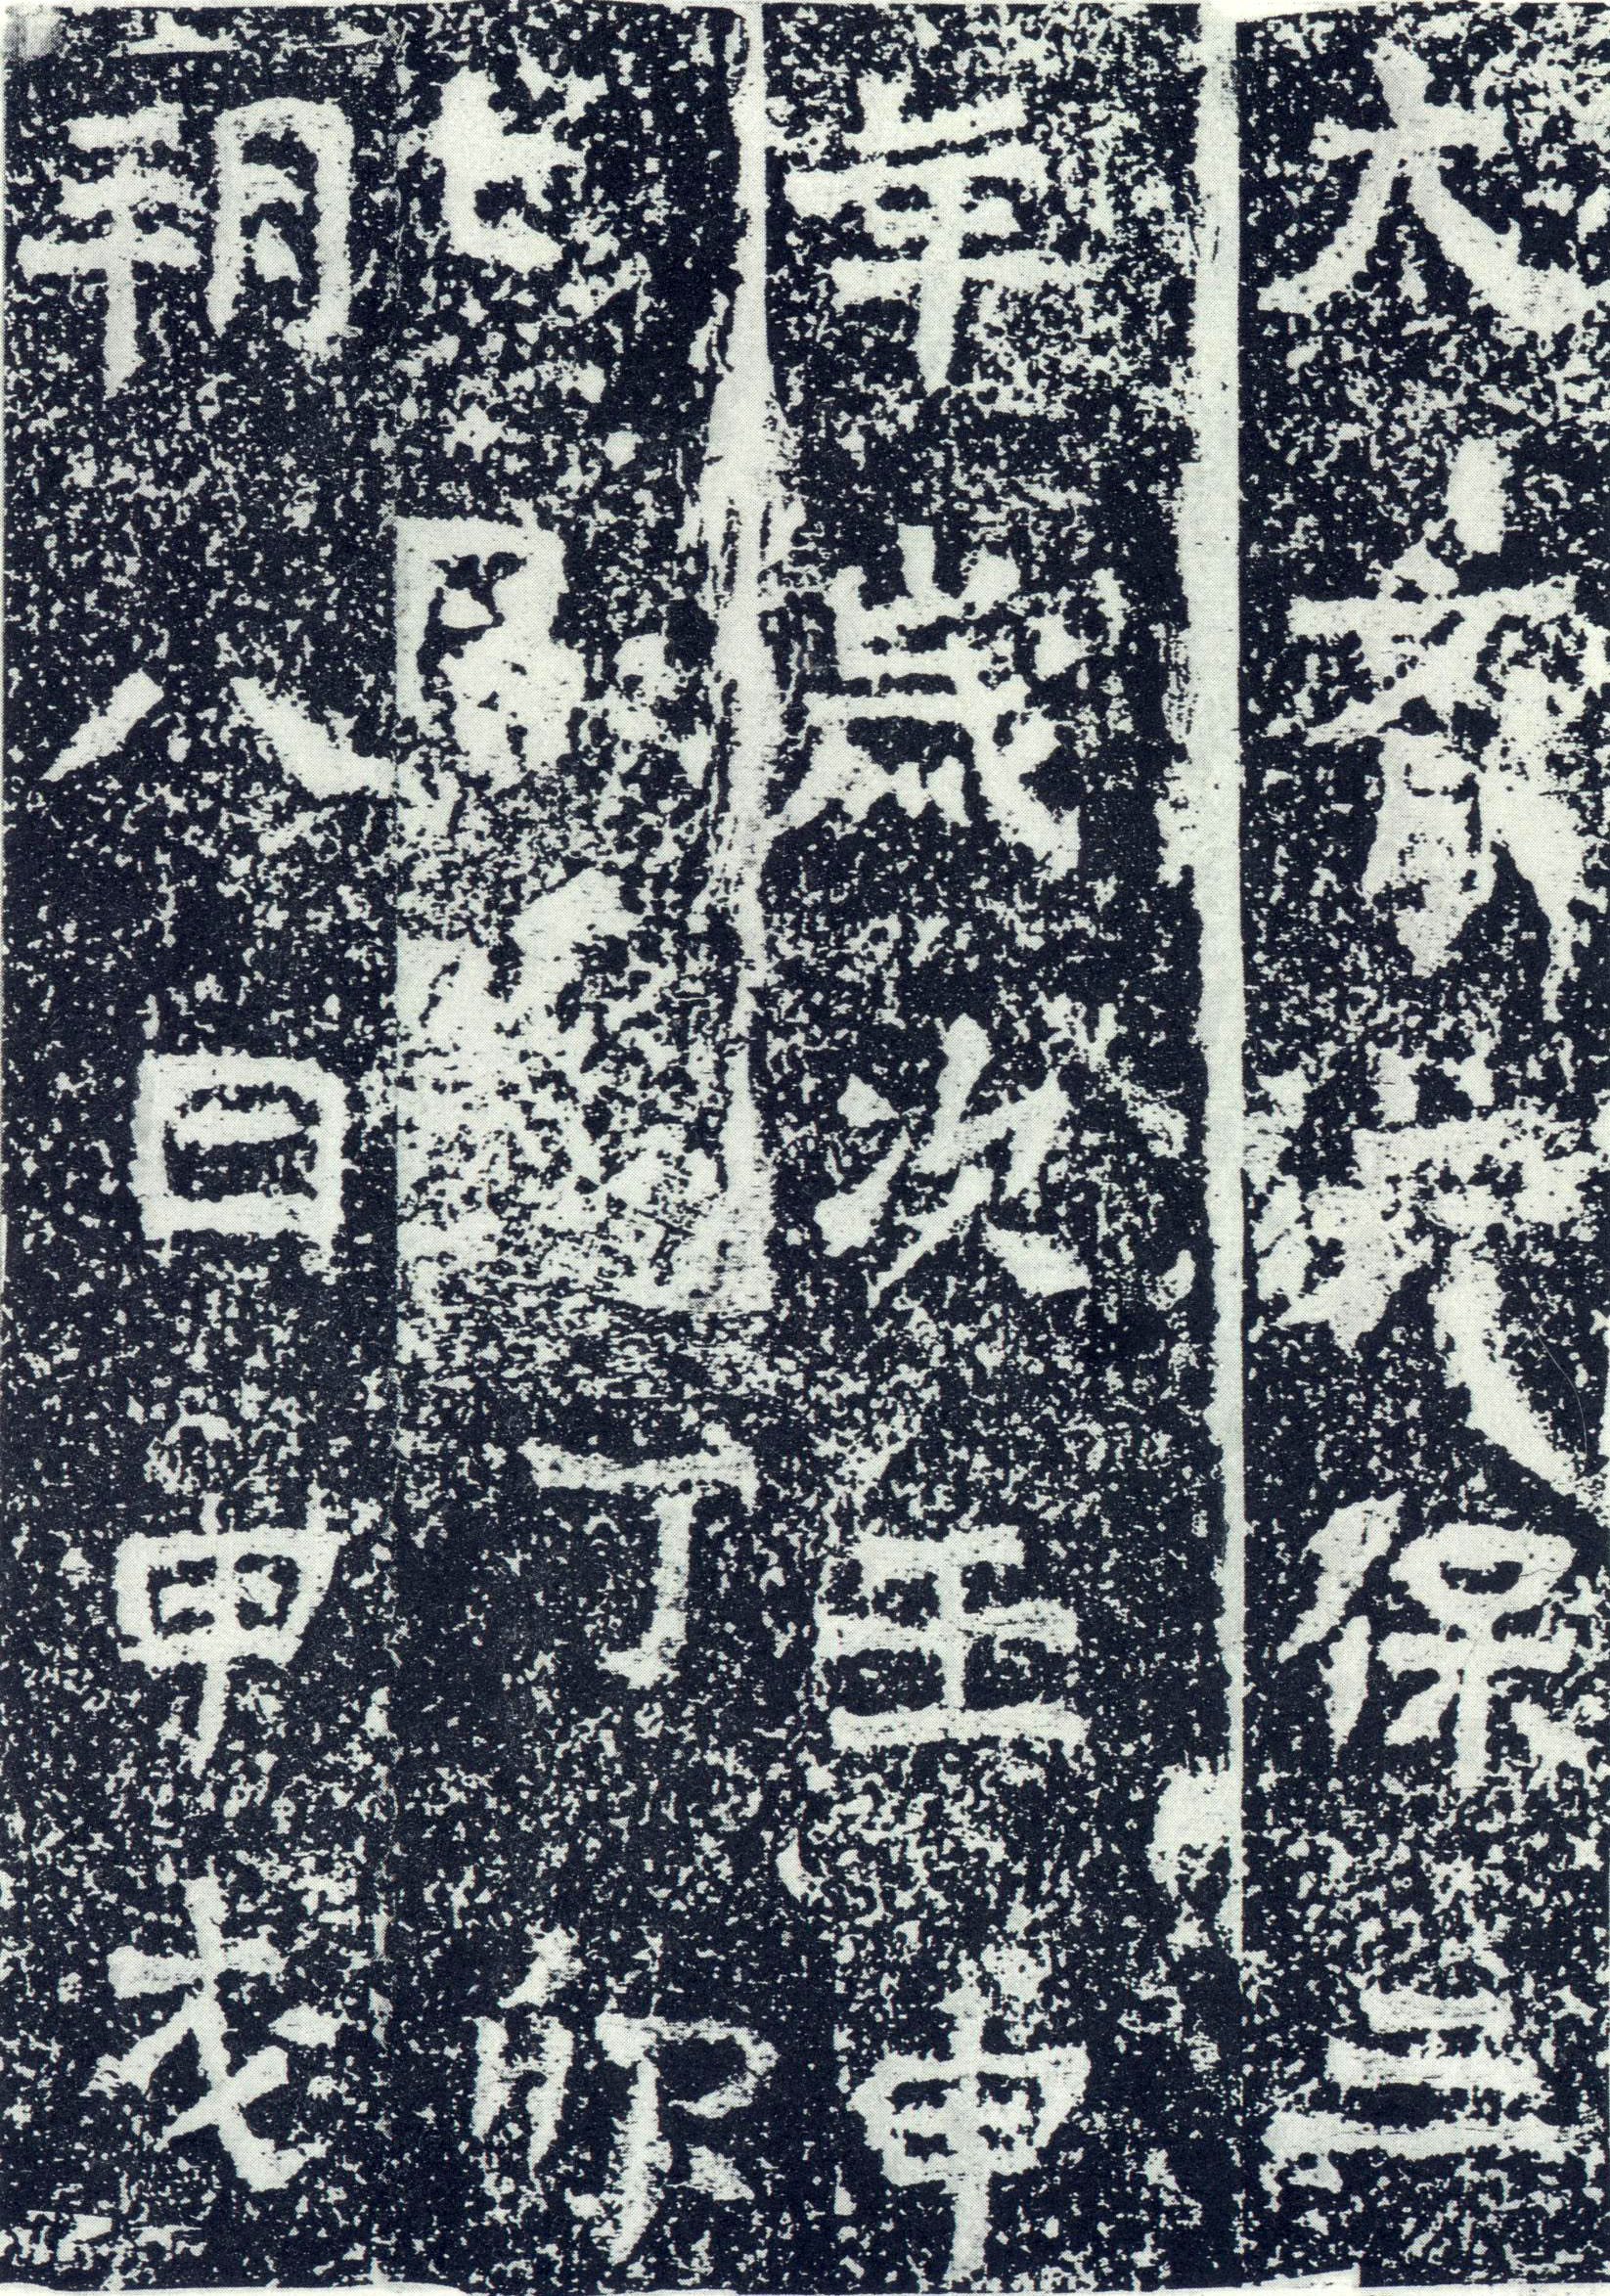 北齐《牛景悦造石浮图记》(图2)